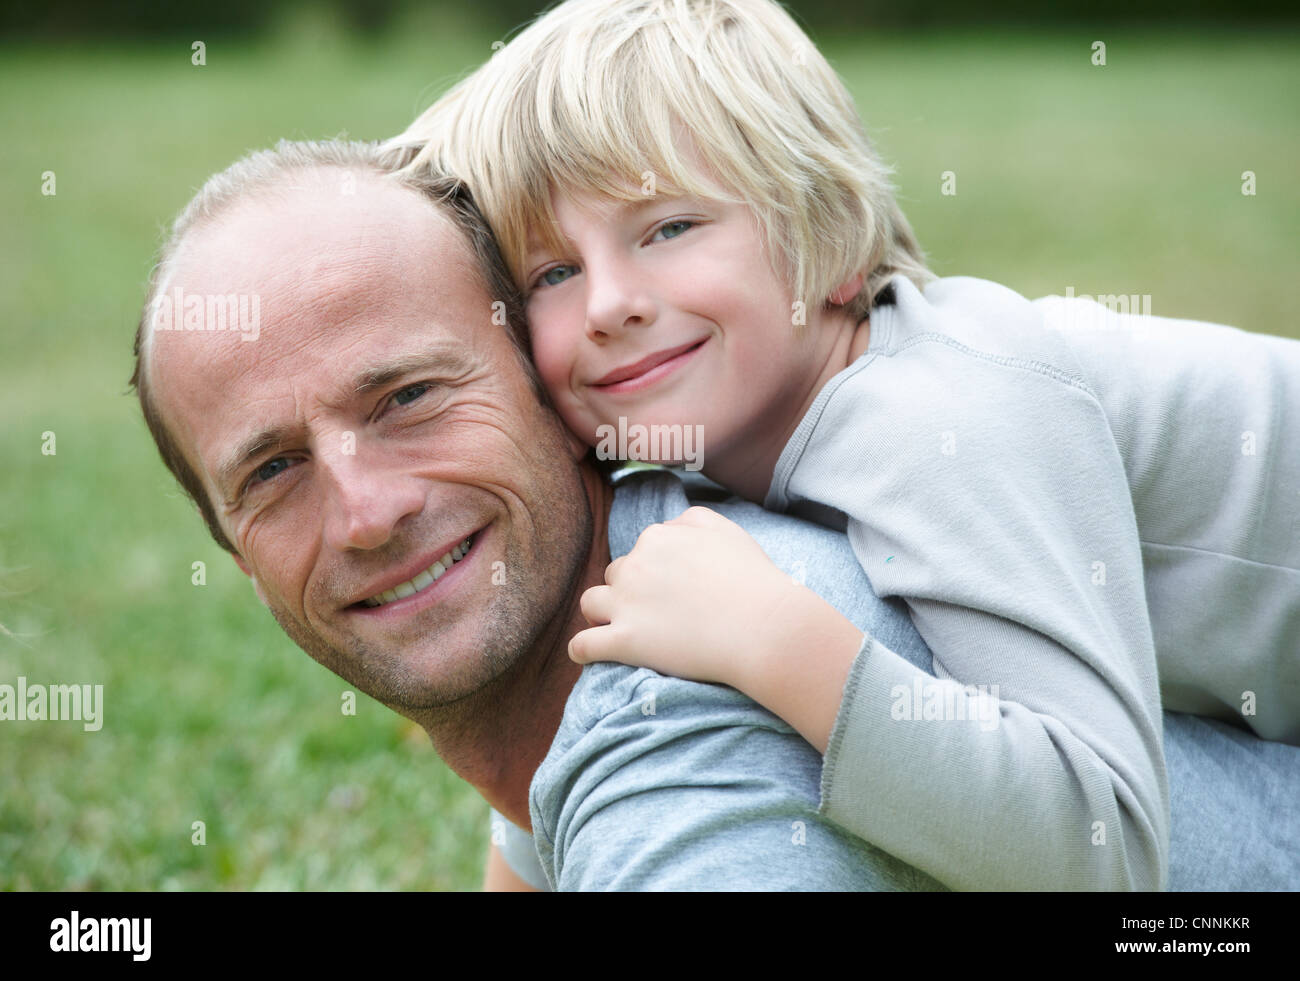 Chiudere da padre e figlio sorridente Foto Stock